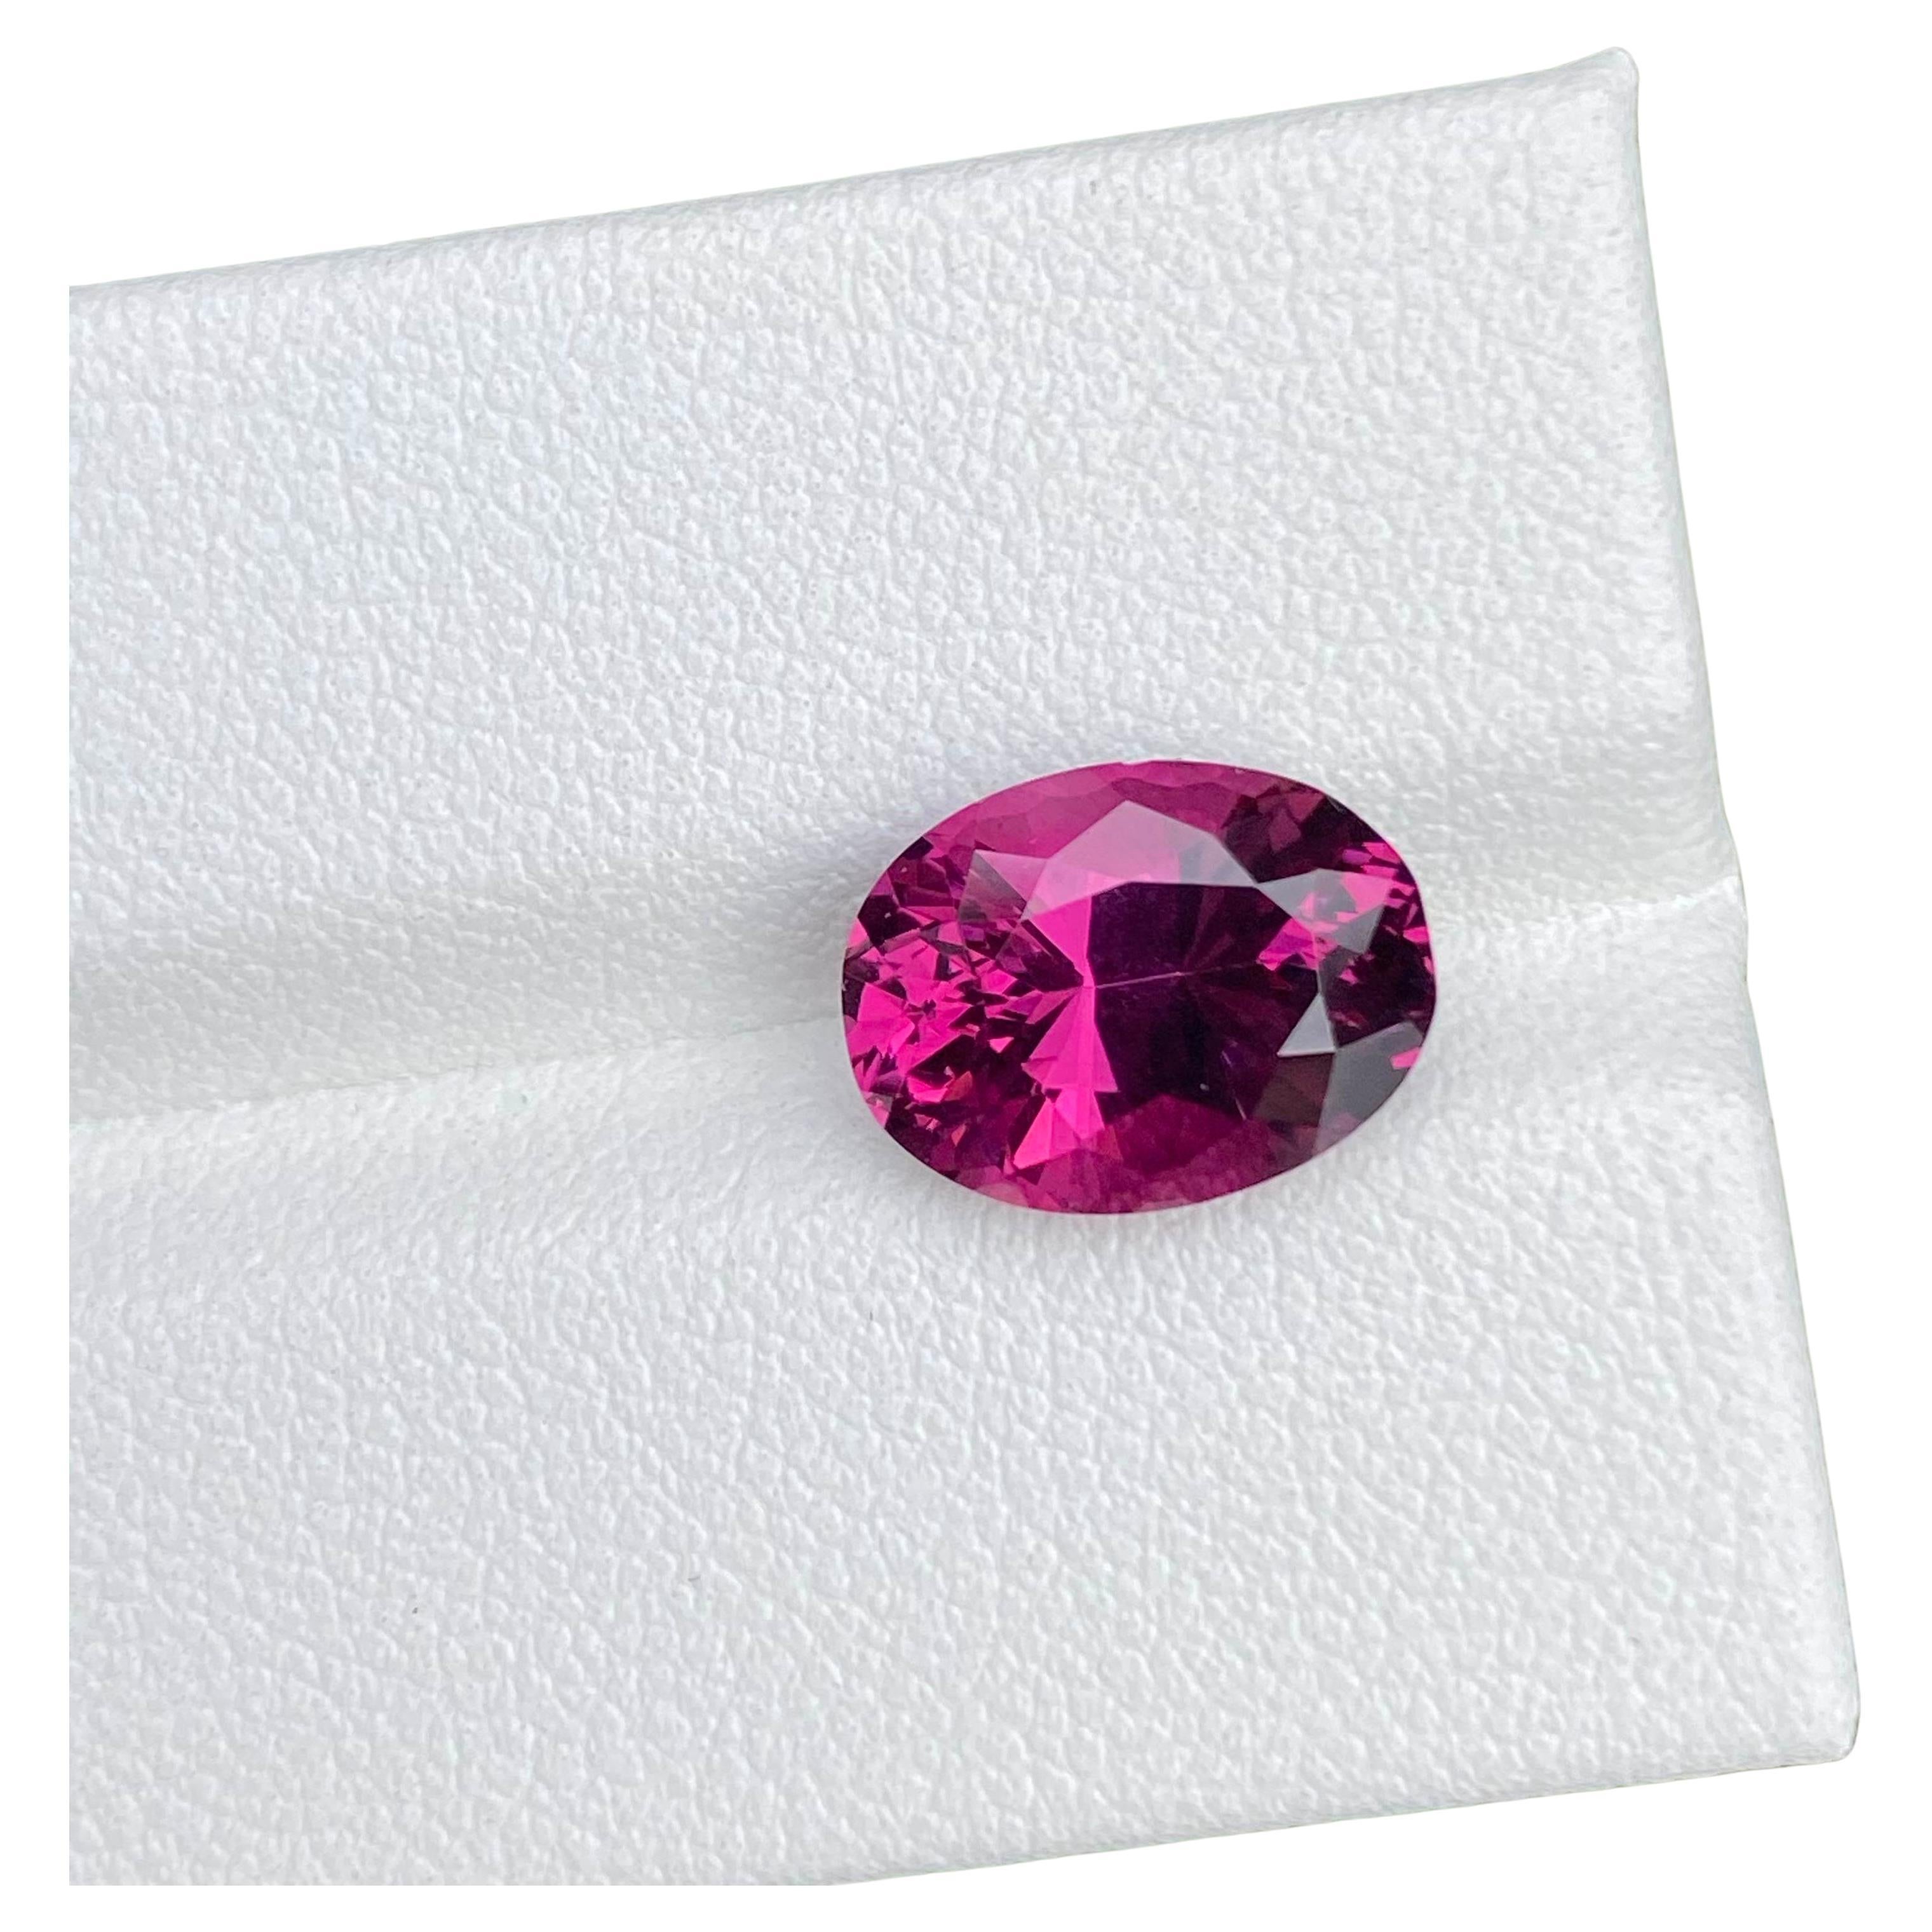 Pink Garnet Ring Gemstone 4.25 Carat Loose Gemstone Ceylon Origin